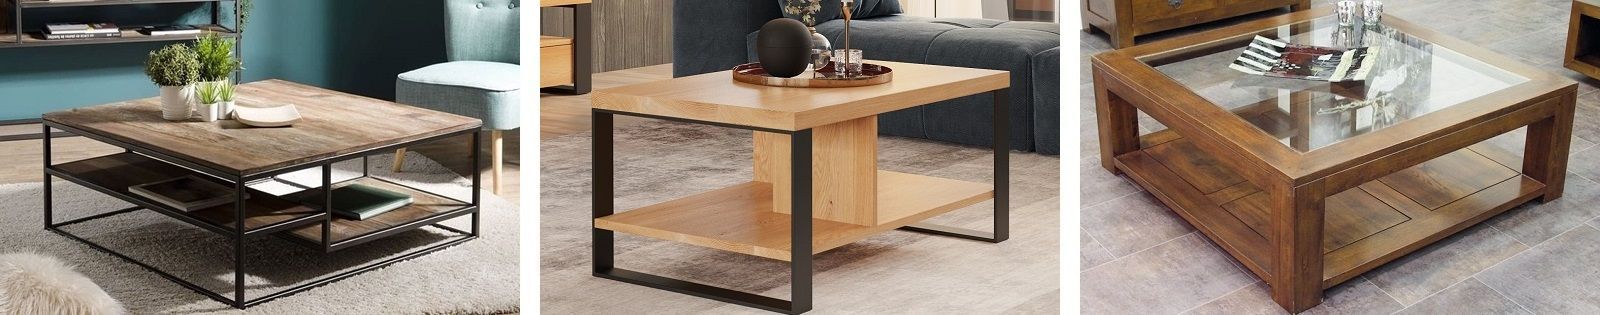 Table basse moderne en bois - Mobilier pour le salon - Lotuséa